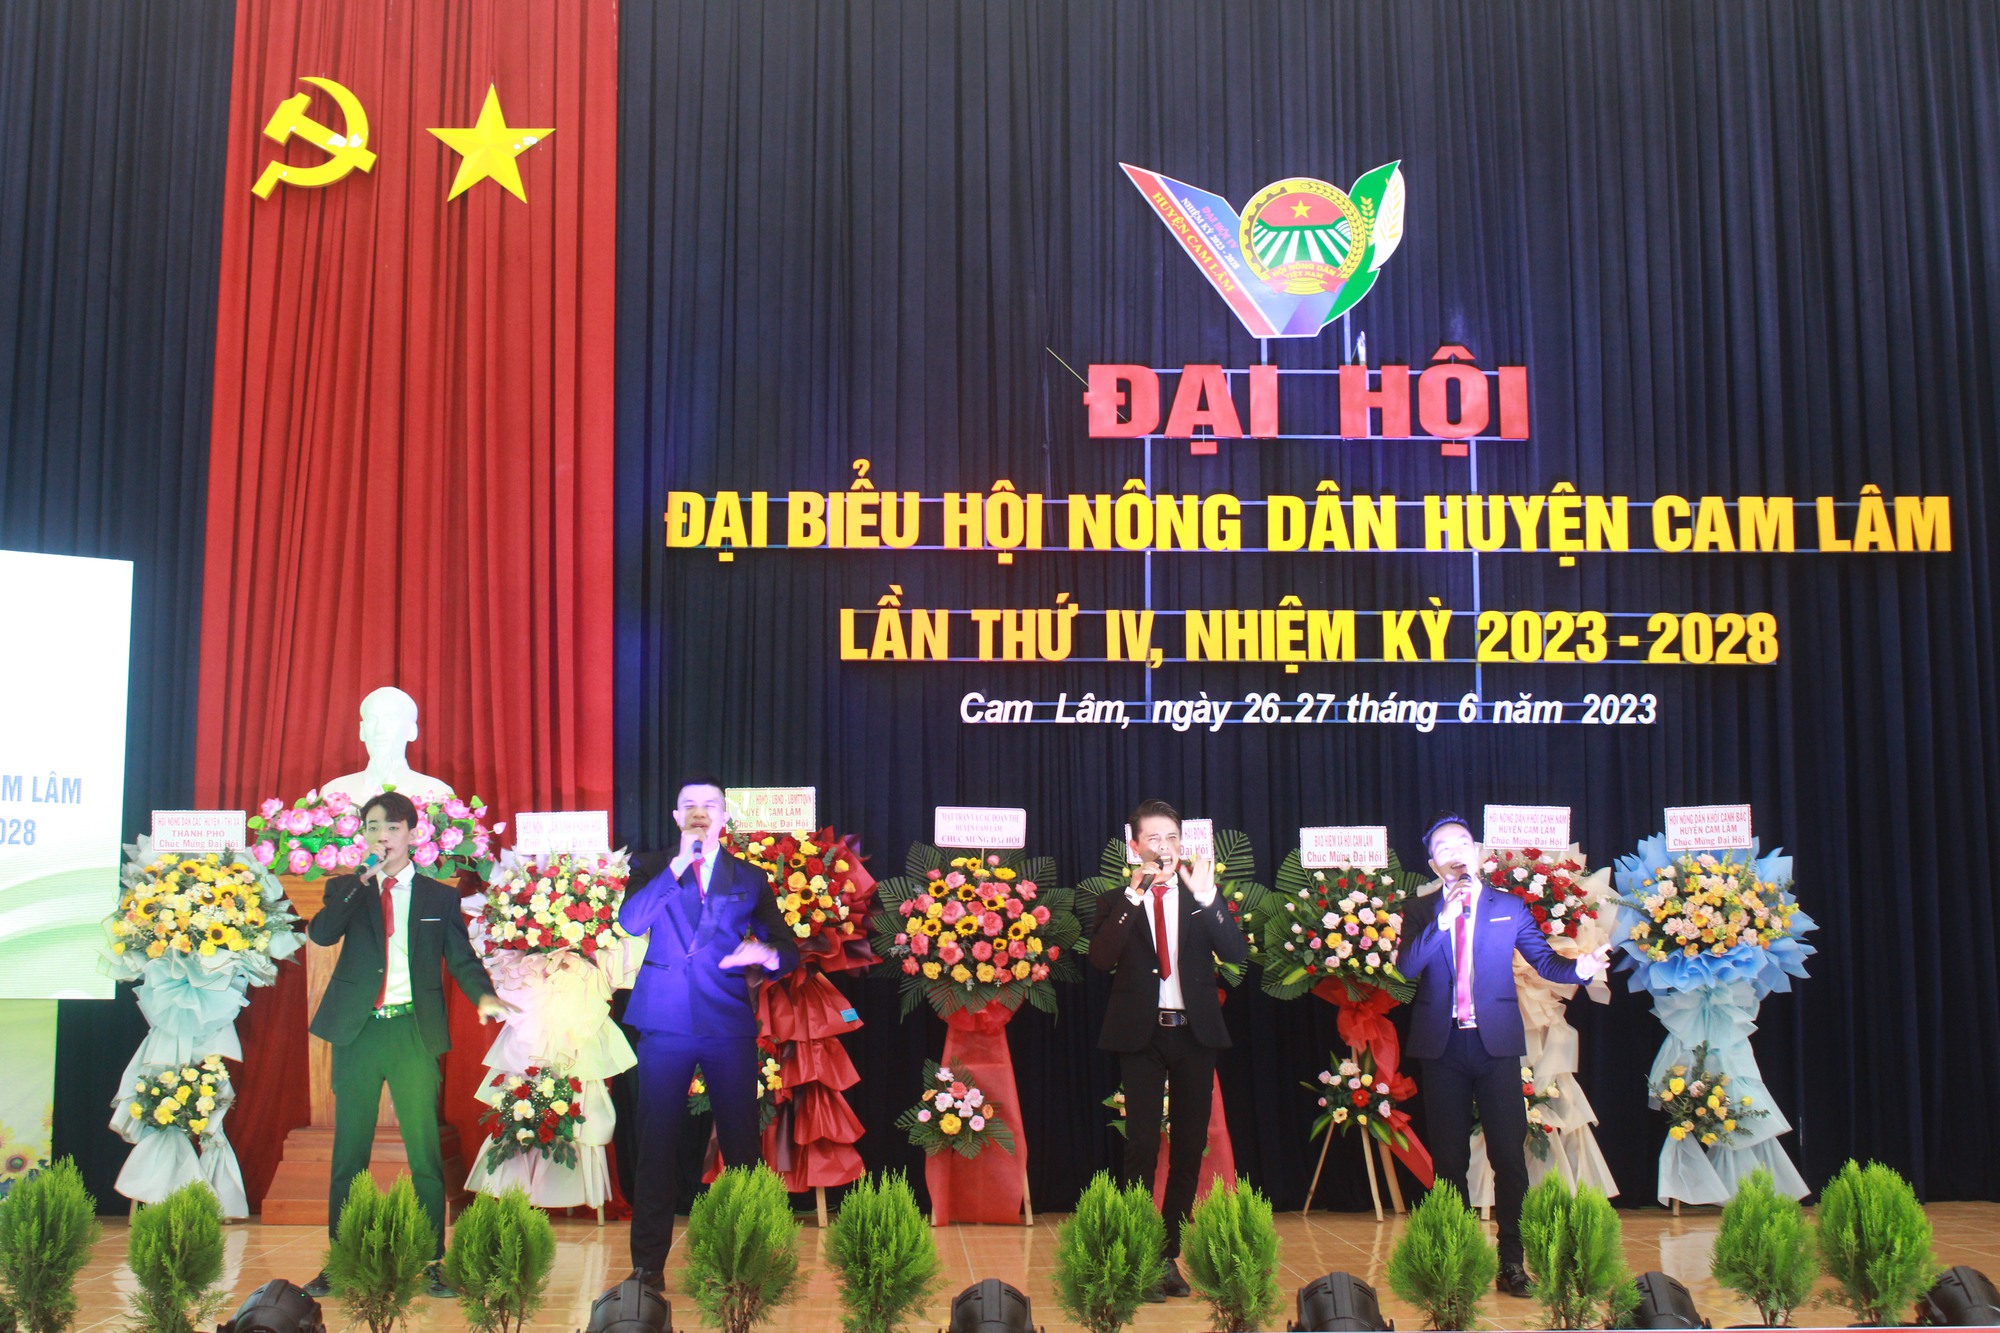 Khánh Hòa: Ông Phạm Hồng Thịnh tái đắc cử Chủ tịch Hội Nông dân huyện Cam Lâm - Ảnh 11.